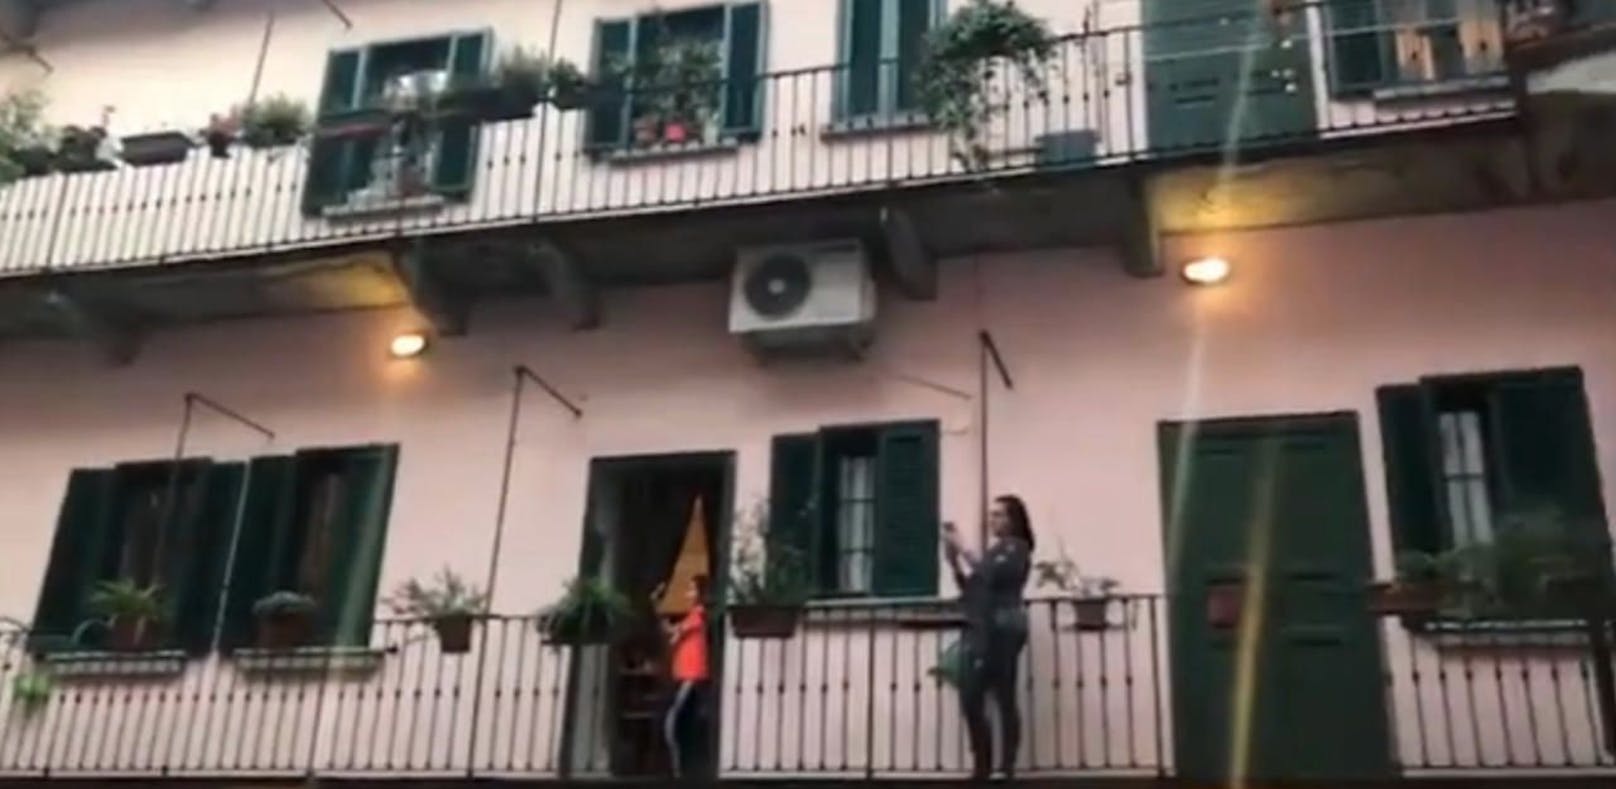 In Italien musizieren die Menschen immer wieder auf den Balkonen.